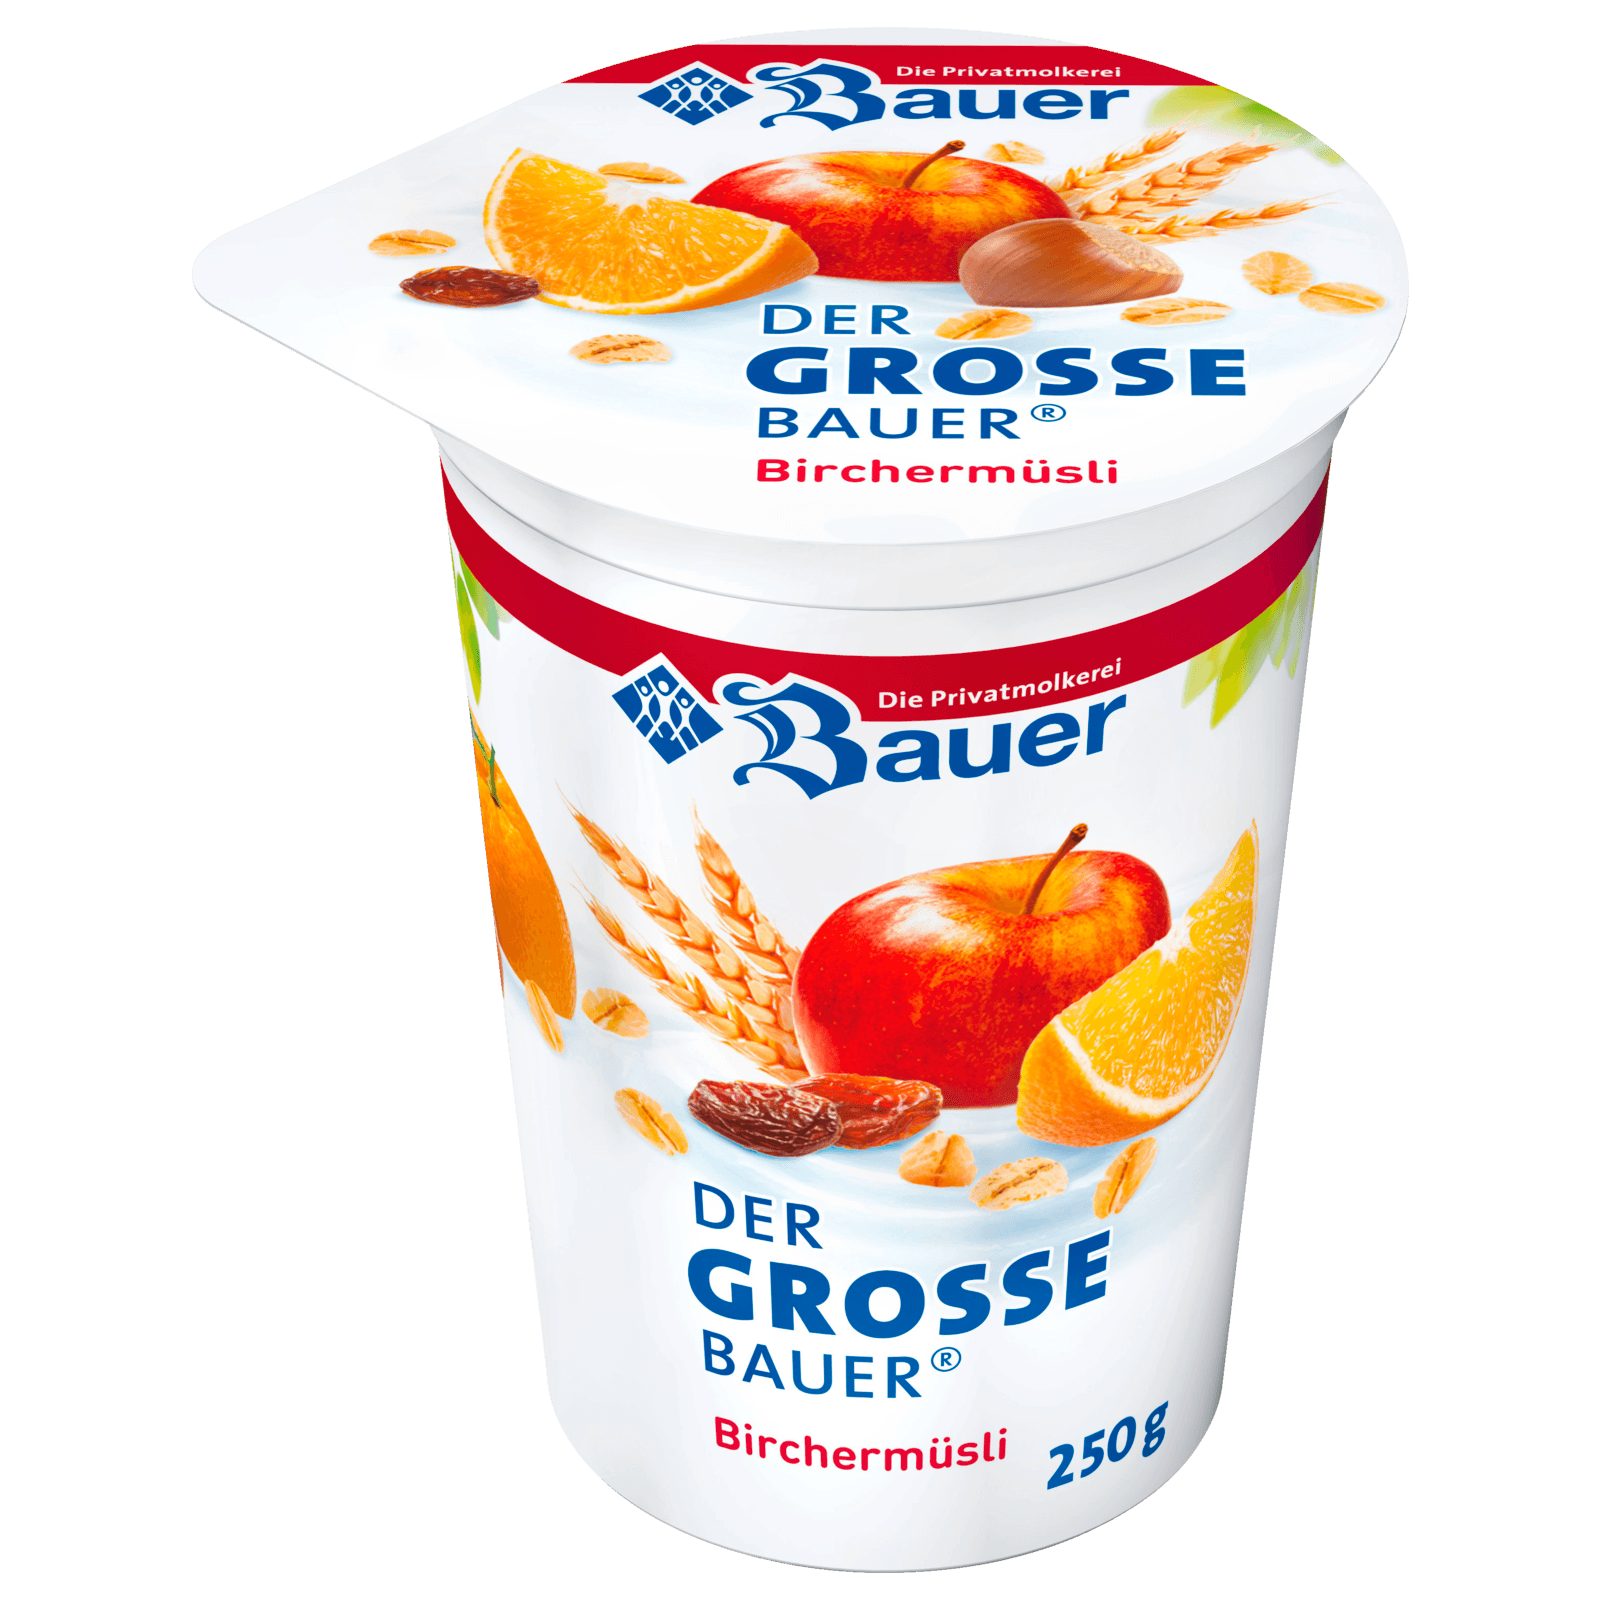 Bauer Joghurt Bircher Müsli 250g bei REWE online bestellen!